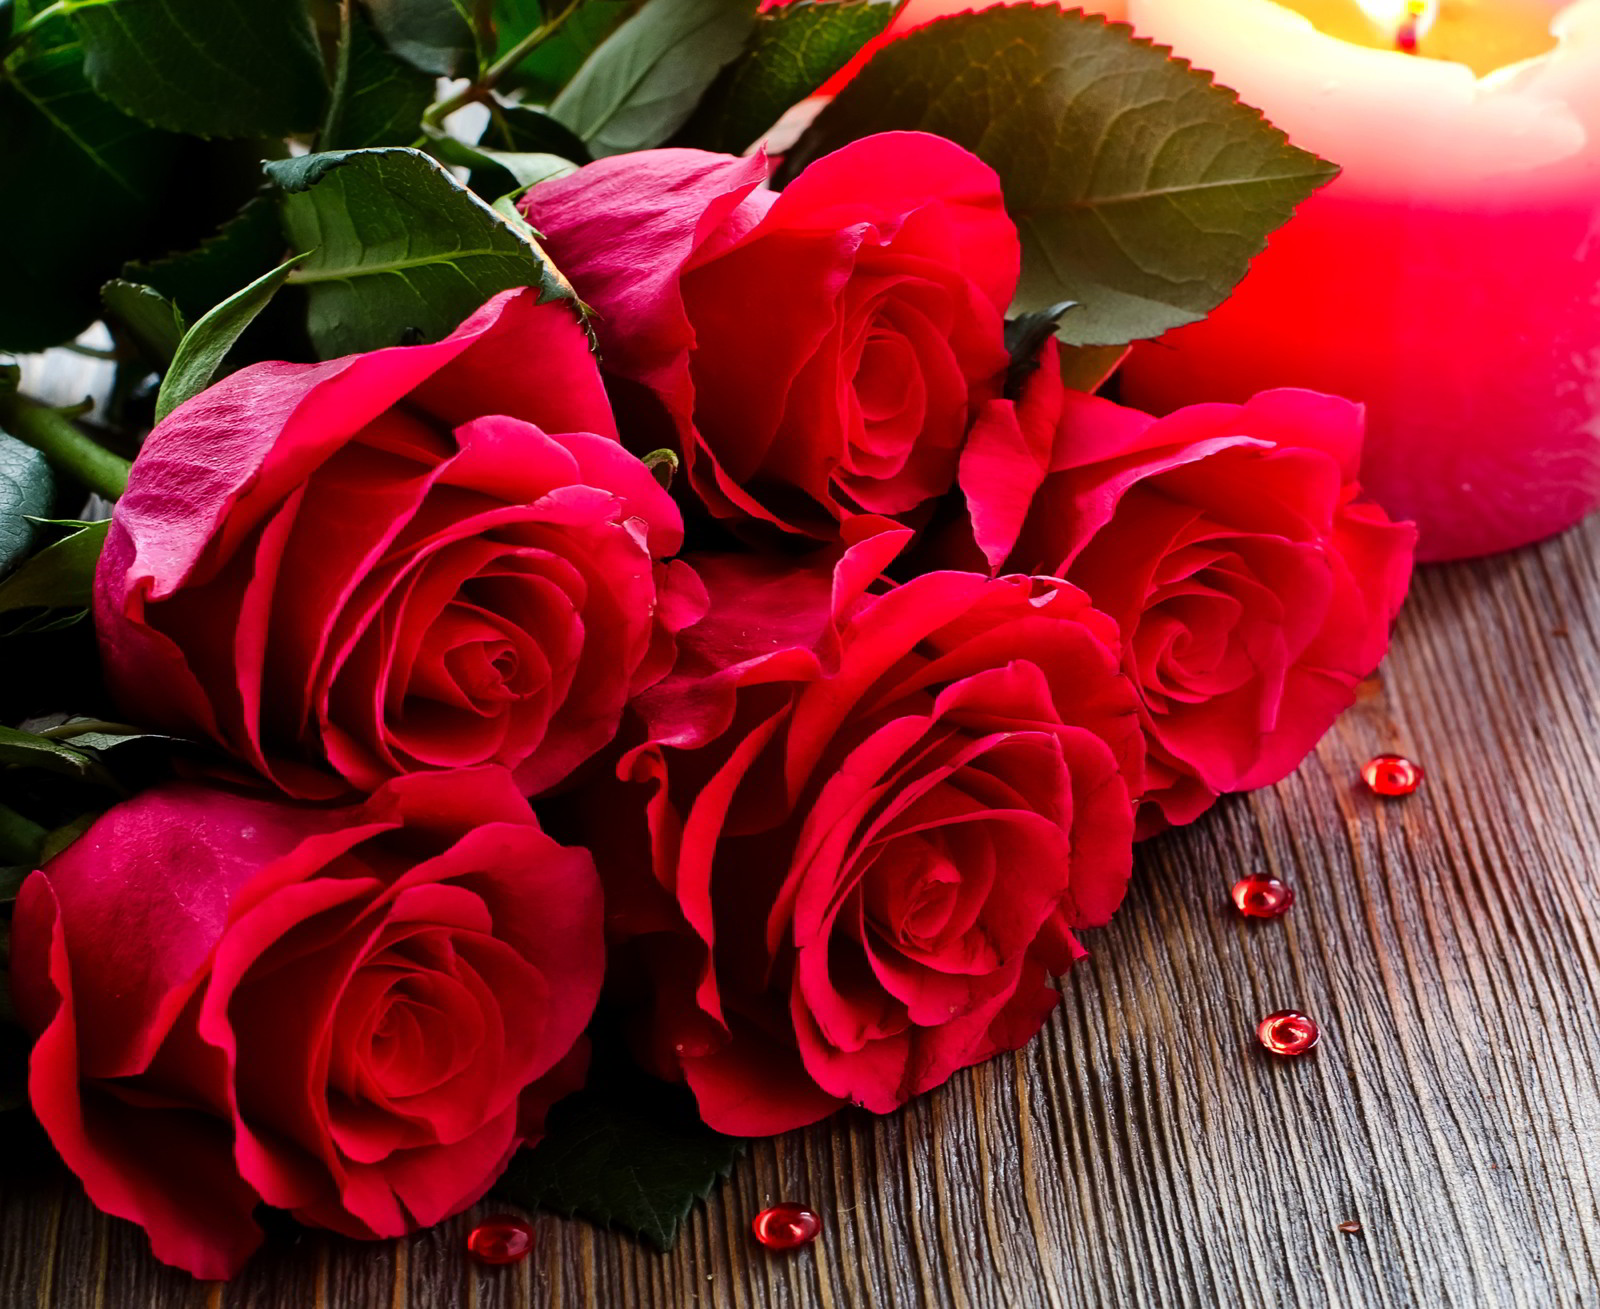 Hình ảnh bó hoa hồng đẹp nhất thế giới